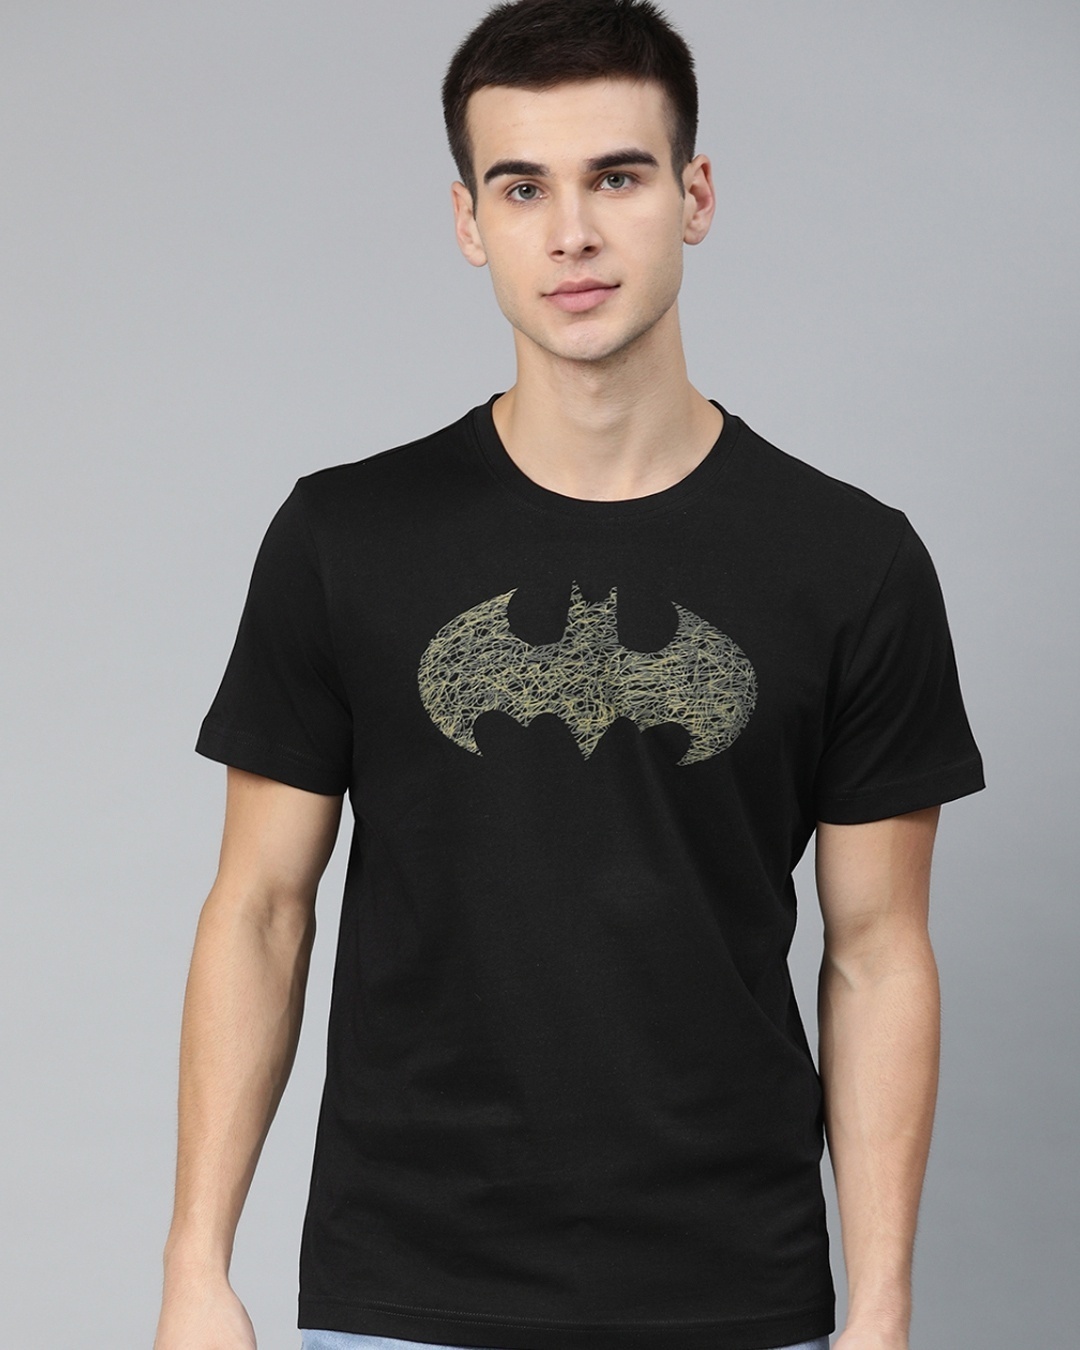 Buy Men's Black & Yellow Batman Printed Rogue T-shirt for Men Black ...